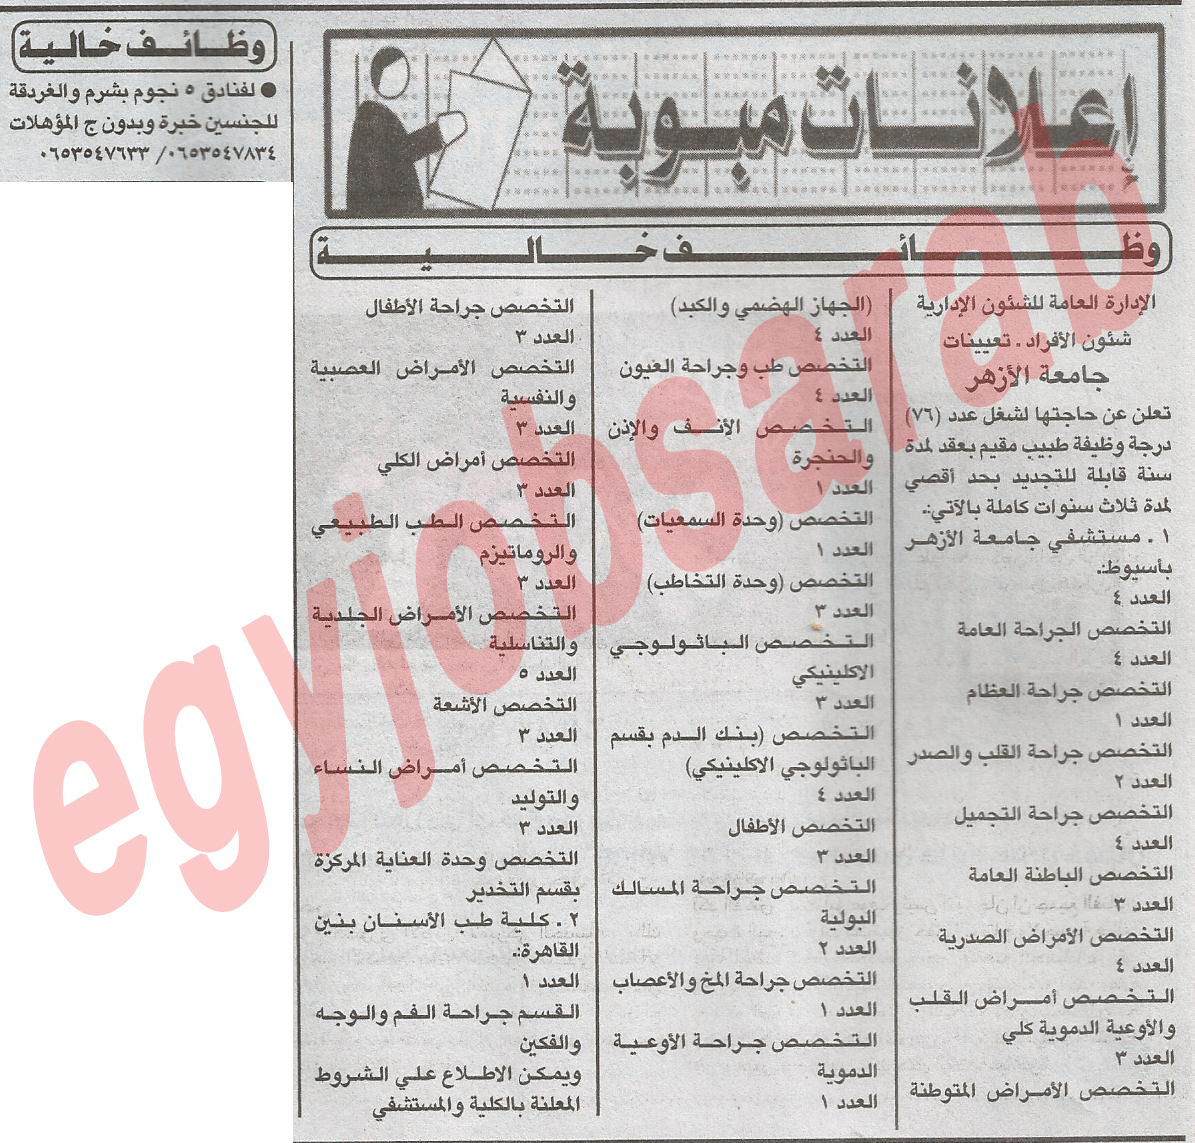 اعلانات الوظائف الخالية فى جريدة الاهرام الخميس 6/12/2012 - اعلانات مصر %D8%A7%D9%84%D8%A7%D9%87%D8%B1%D8%A7%D9%85+1